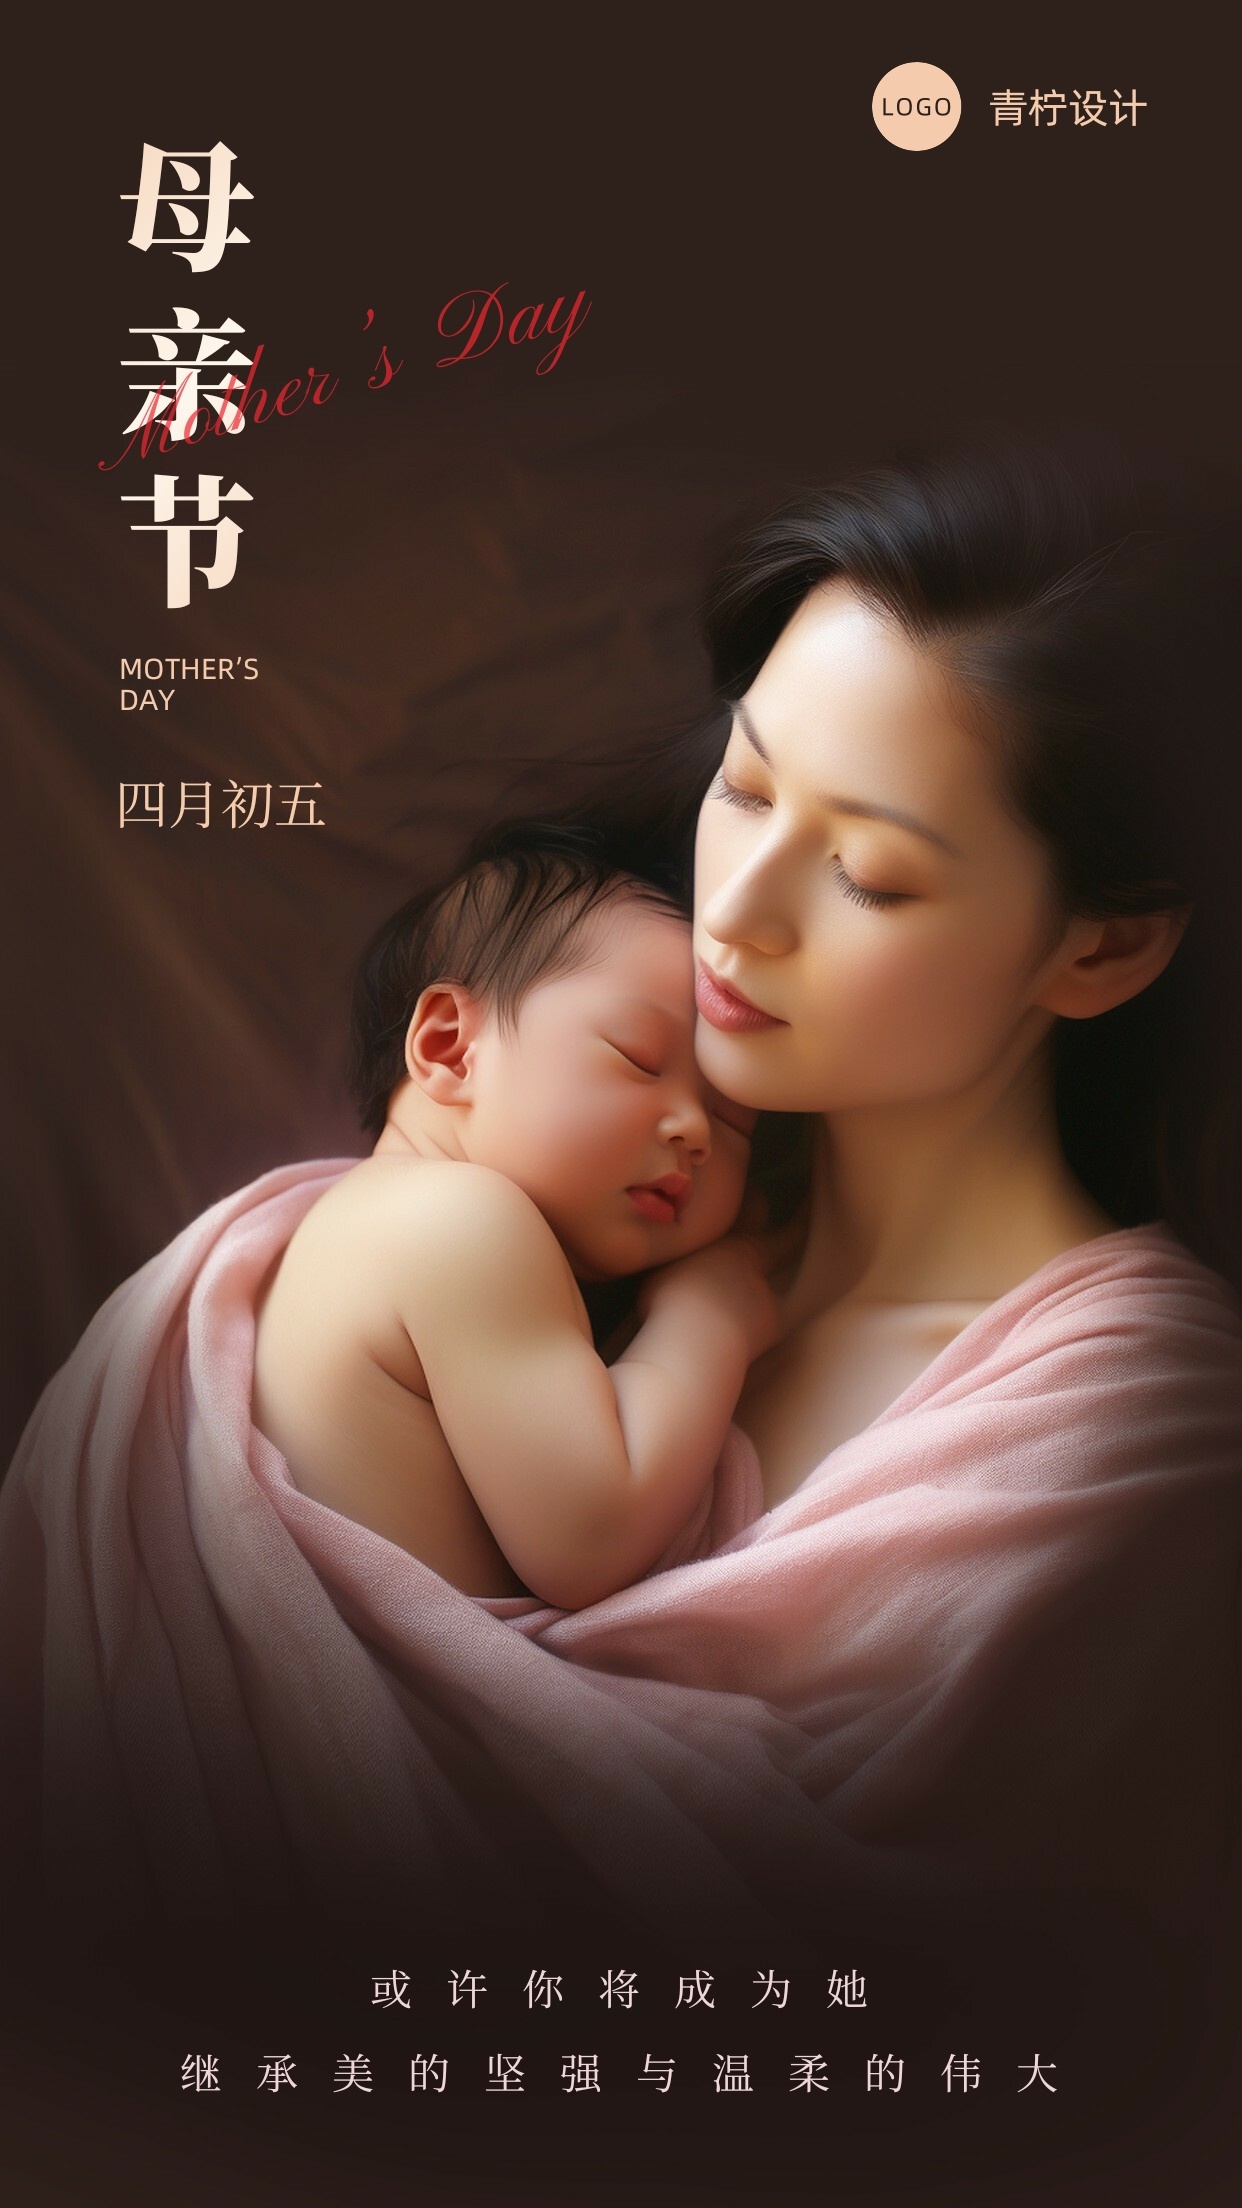 小清新母亲节节日海报